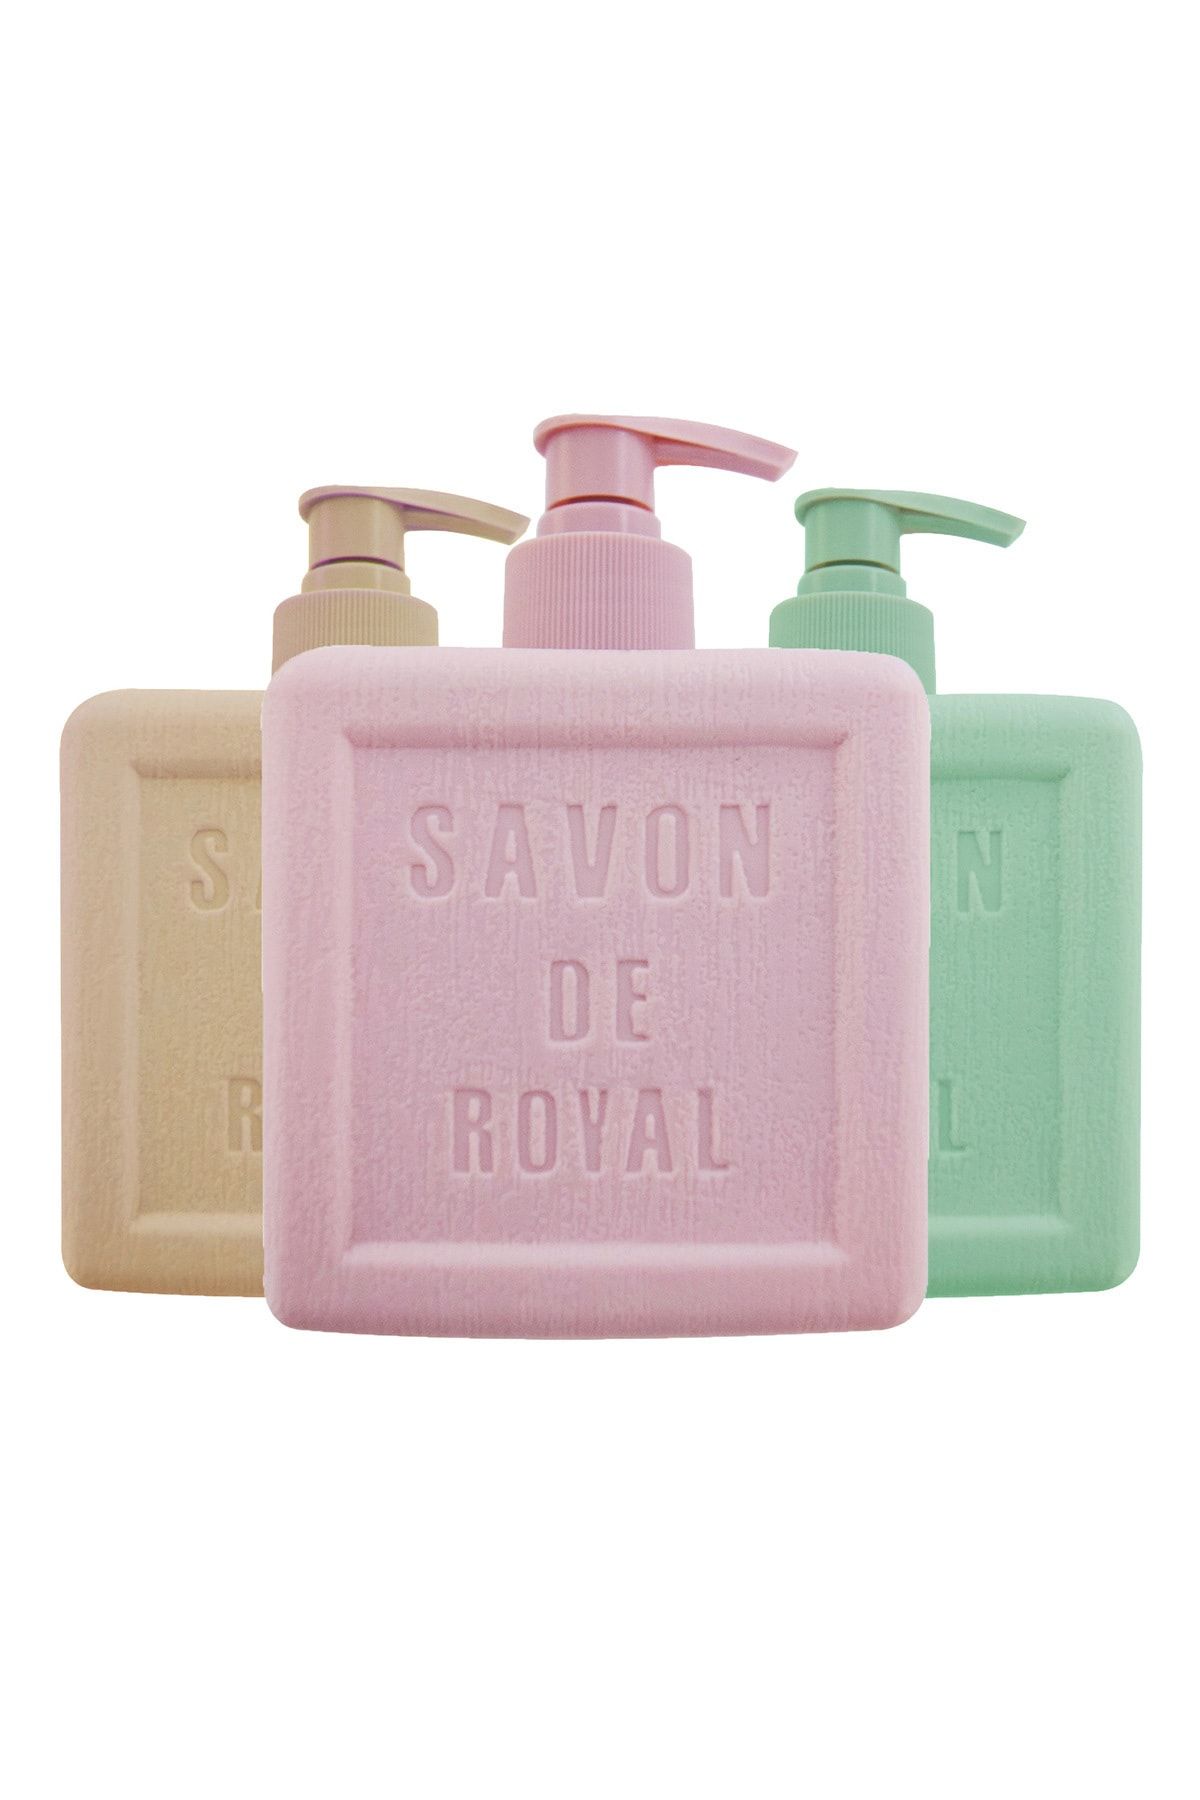 Savon de Royal Provence Nemlendirici Luxury Vegan Sıvı Sabun Karma Paket 3 X 500 ml